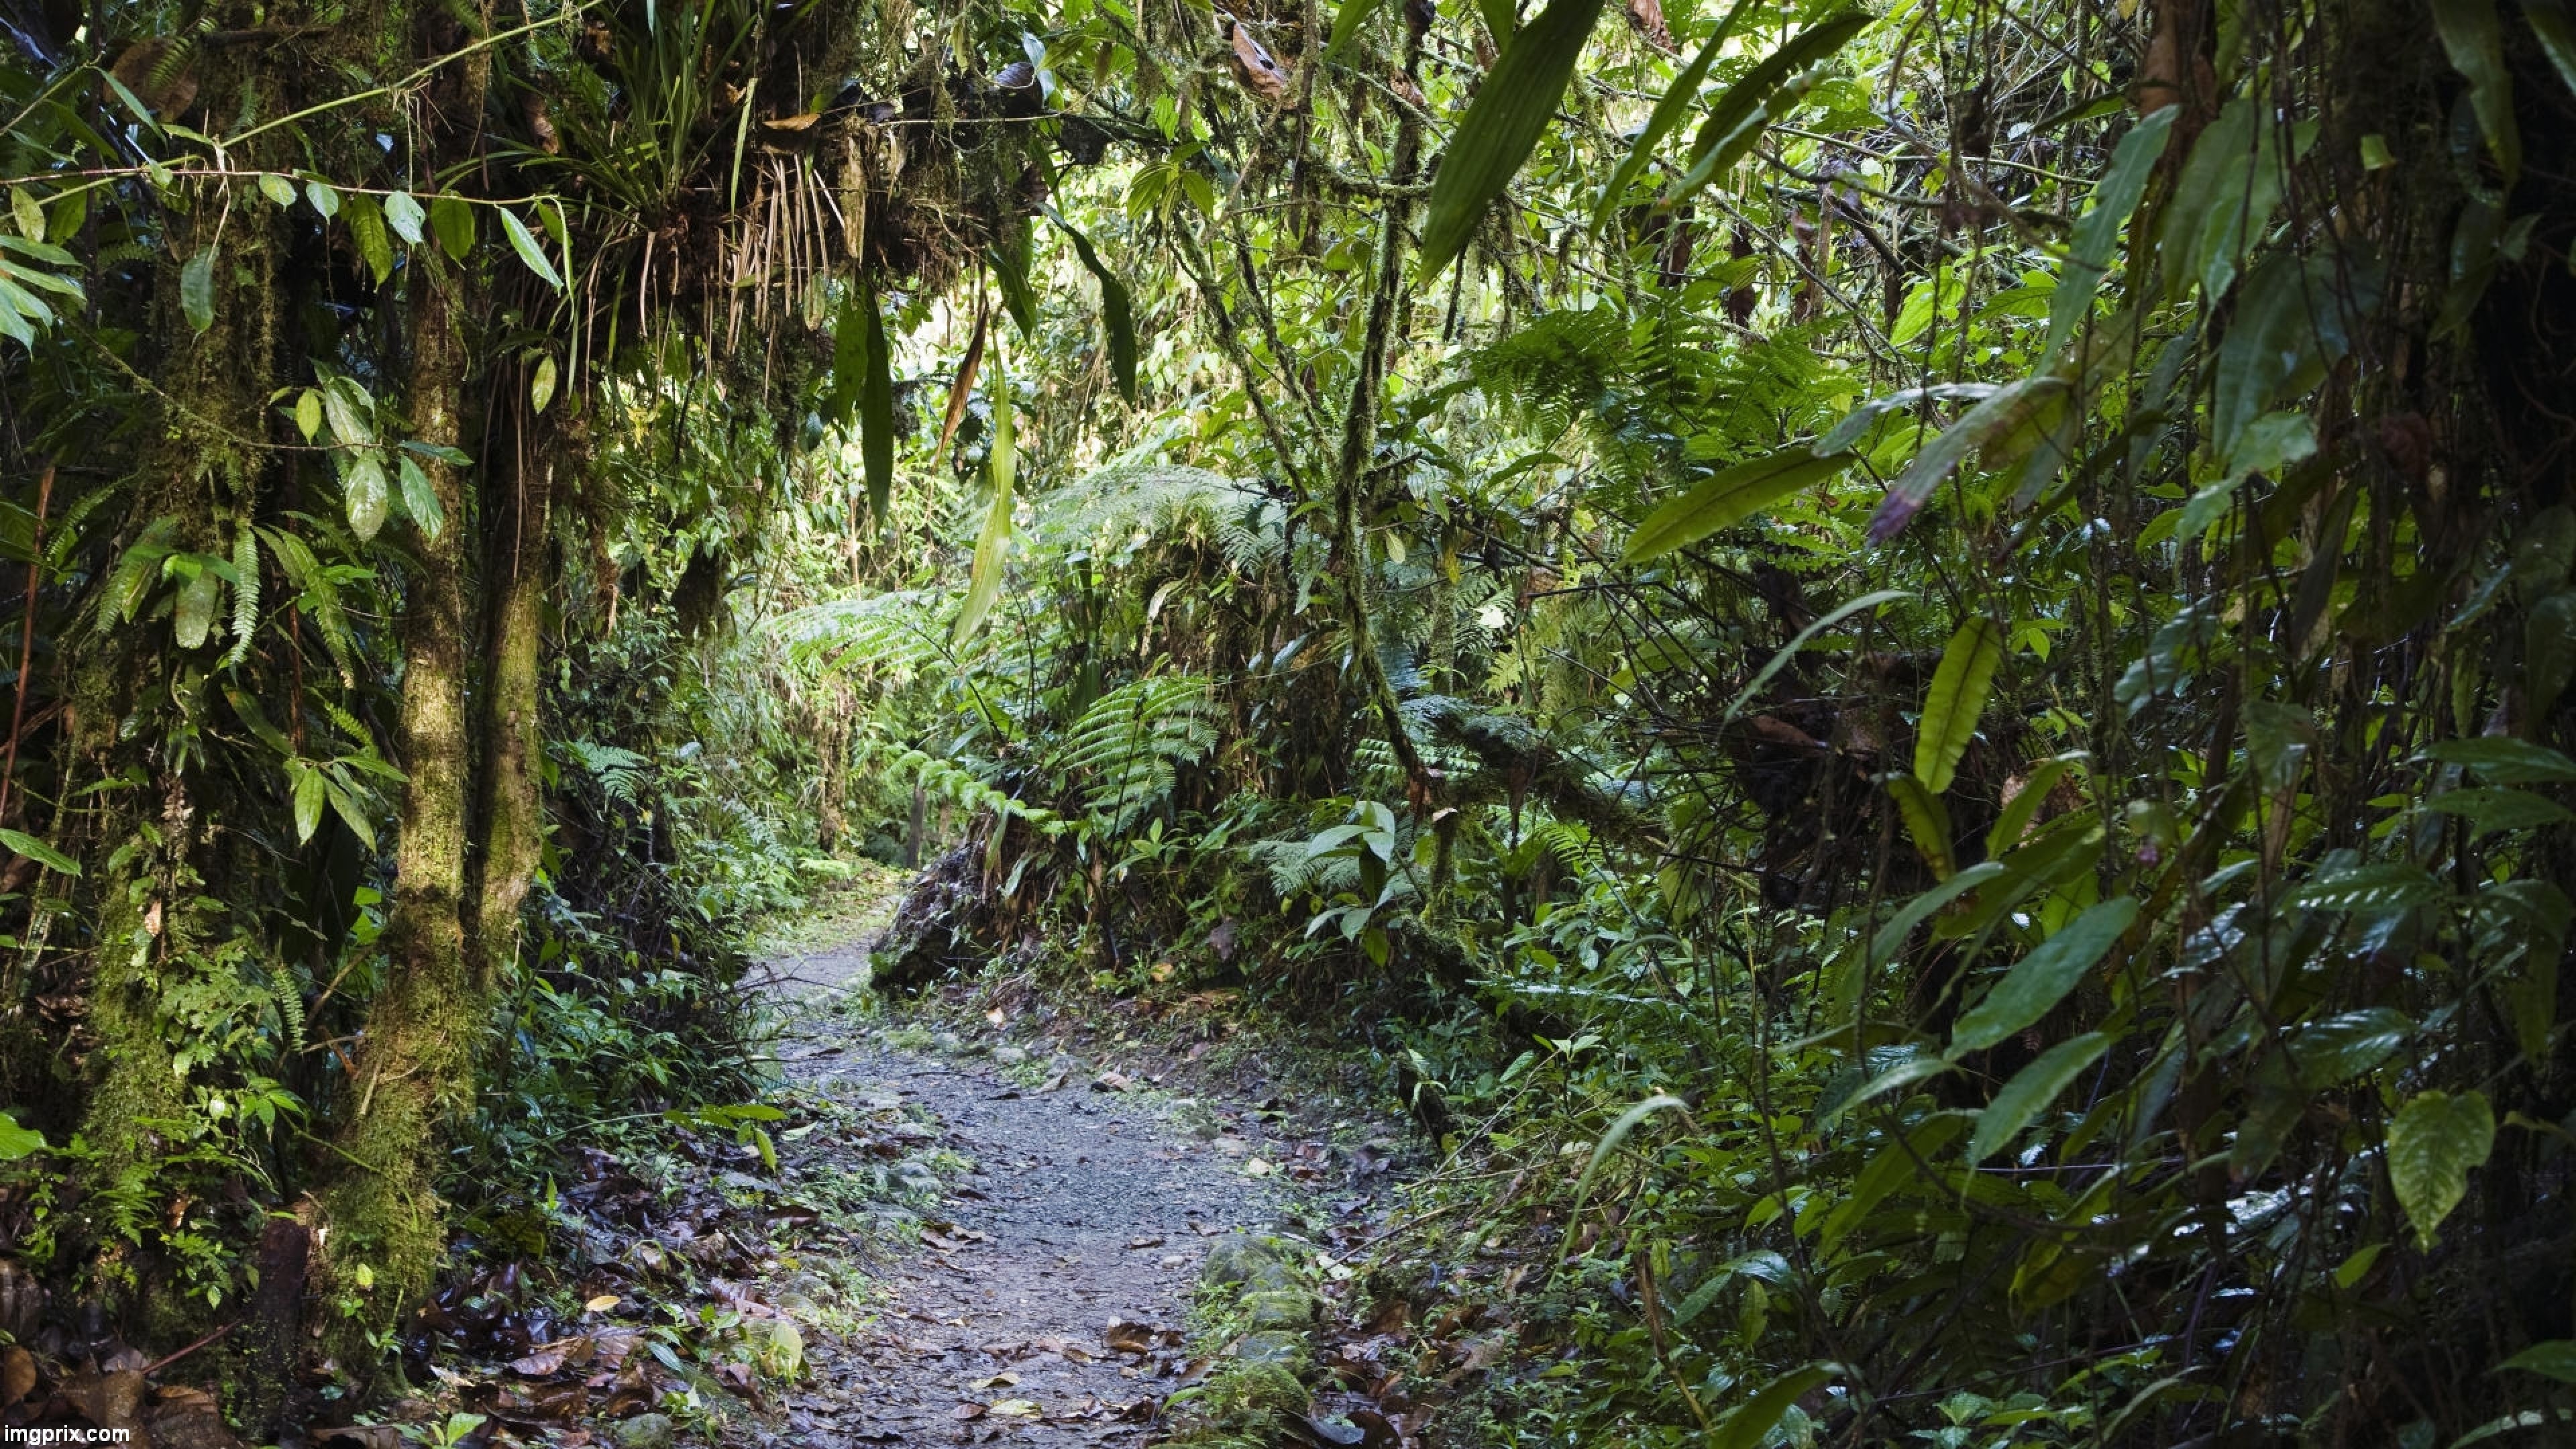 Enchanting rainforest, Nature's wonder, Vibrant ecosystem, Eco-tourism destination, 3840x2160 4K Desktop